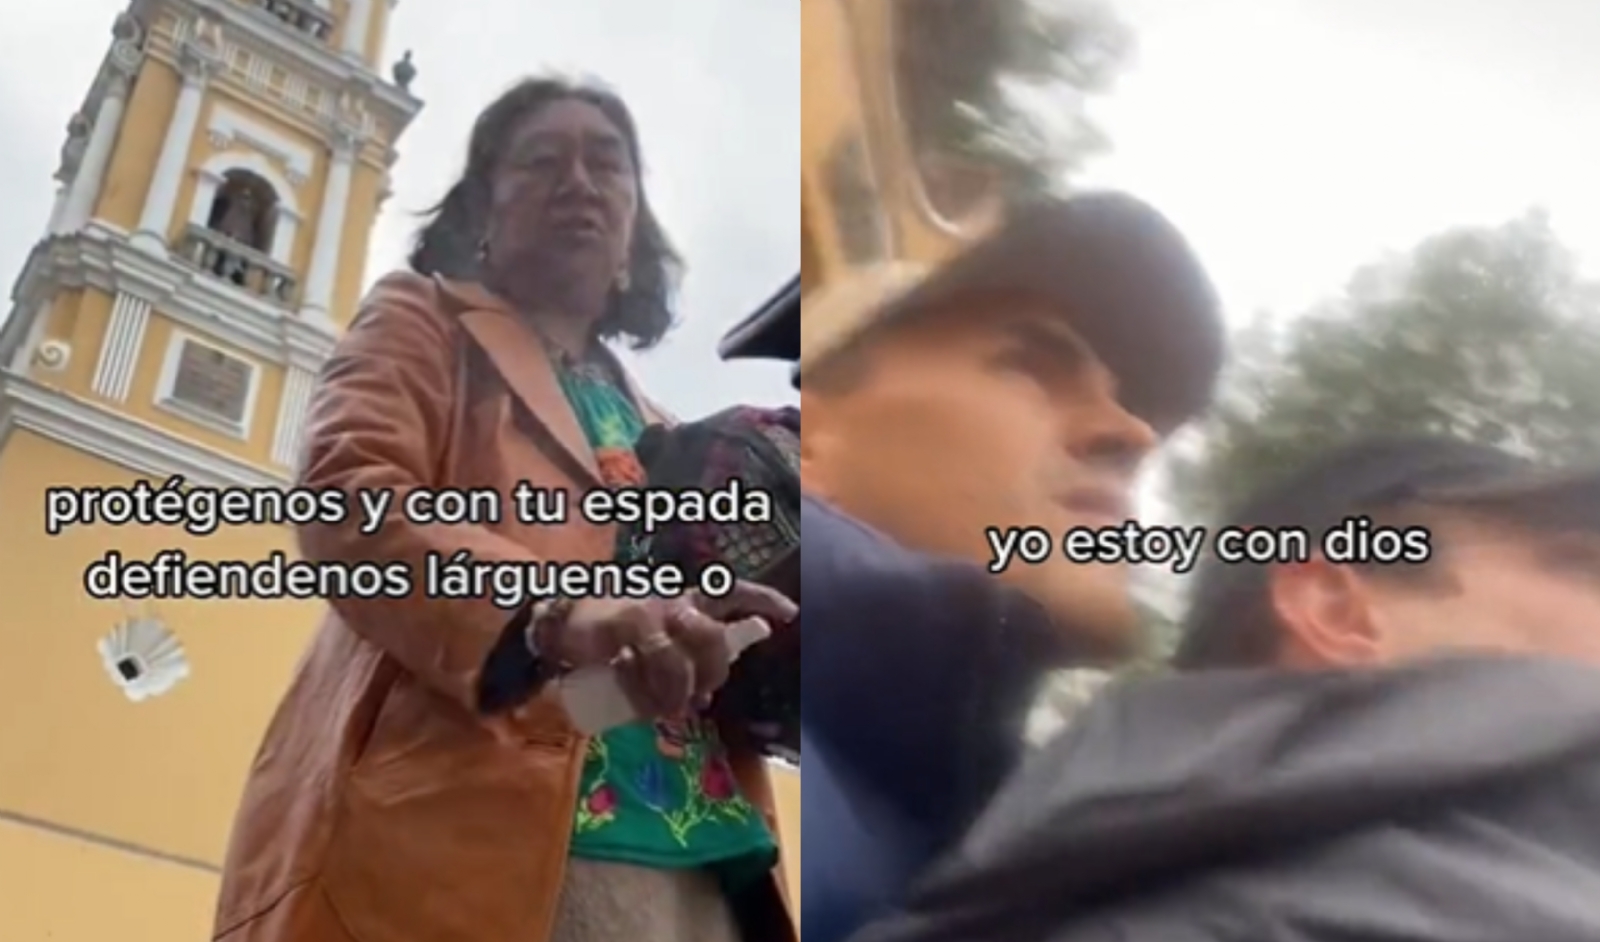 "Me quedé impactado" declaró uno de los jóvenes discriminados por  en Toluca